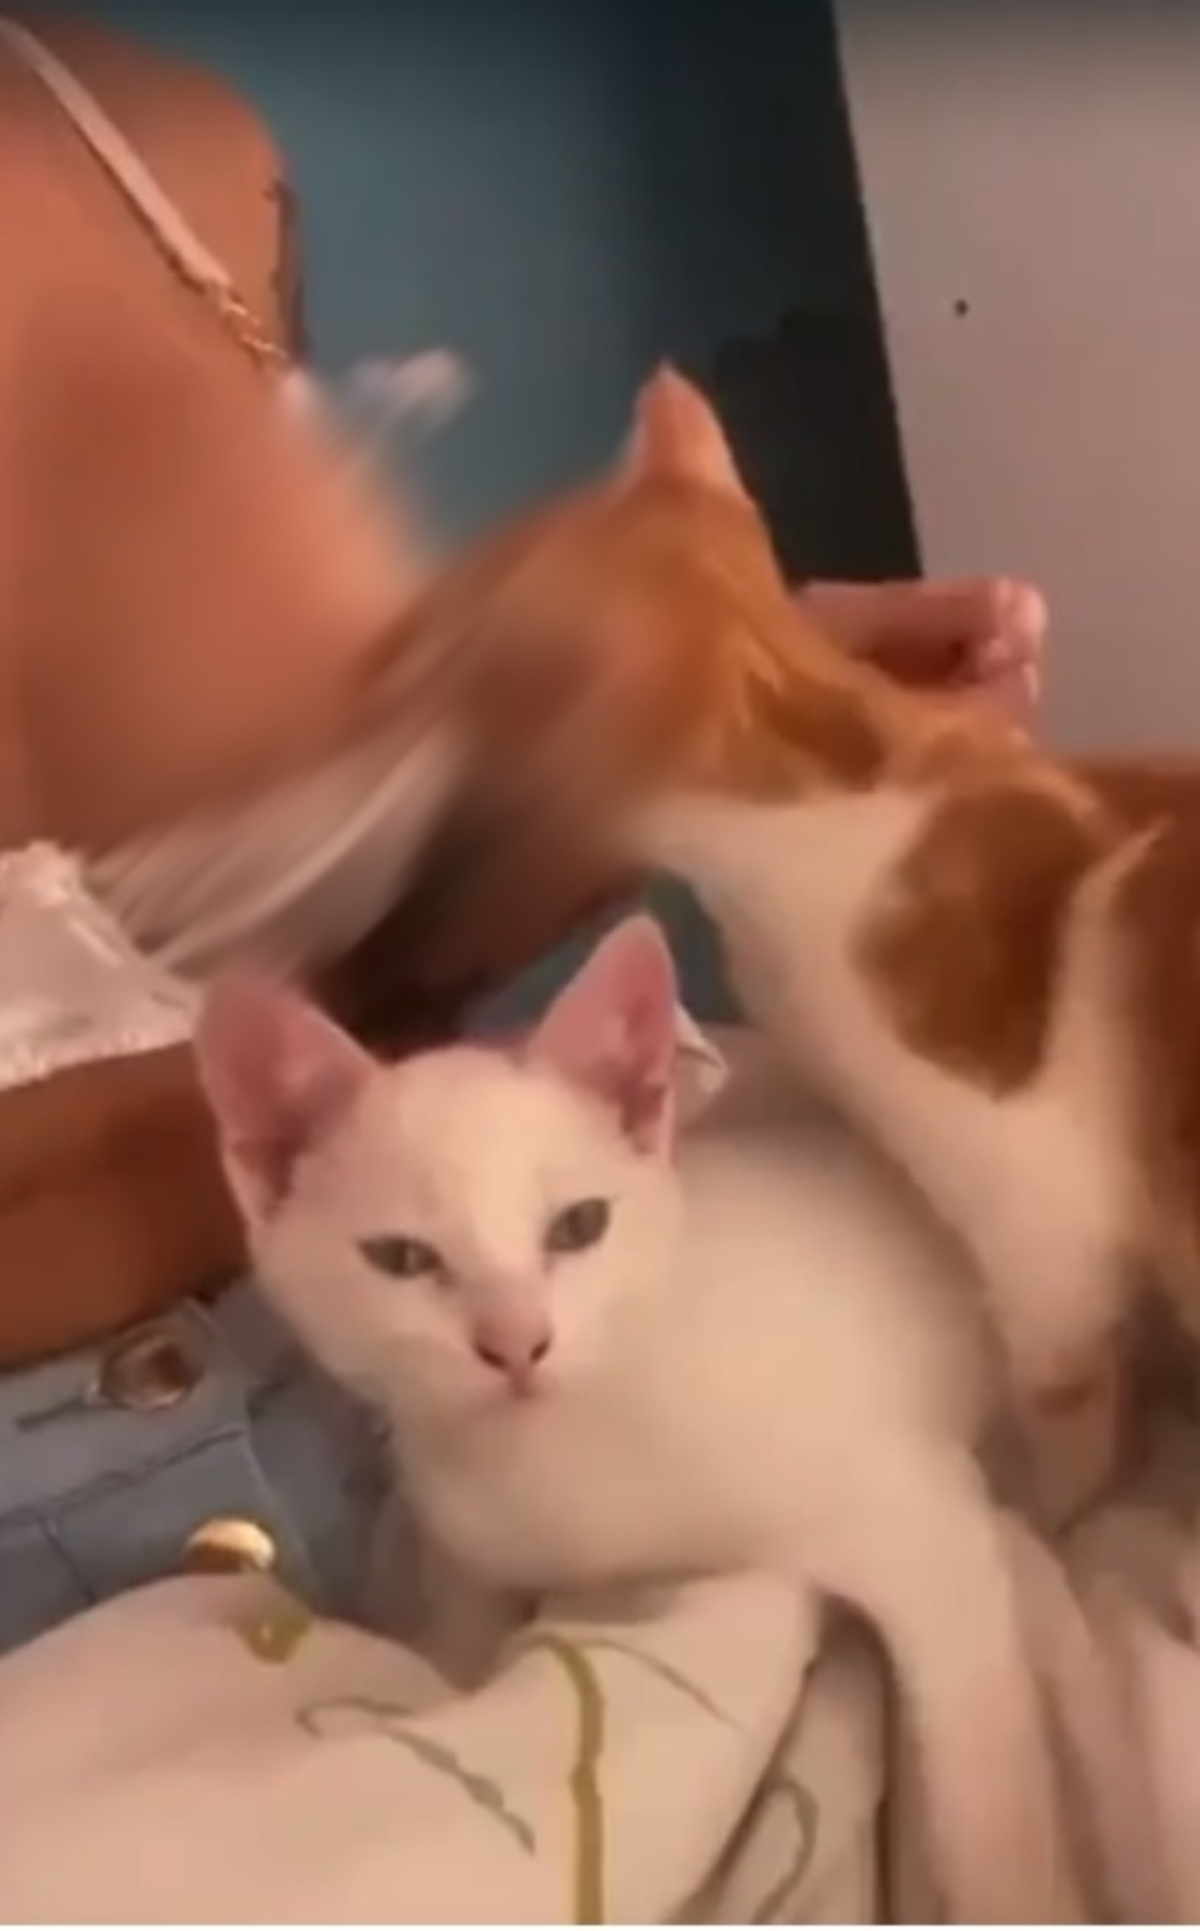 Mc pipokinha vídeo com gato